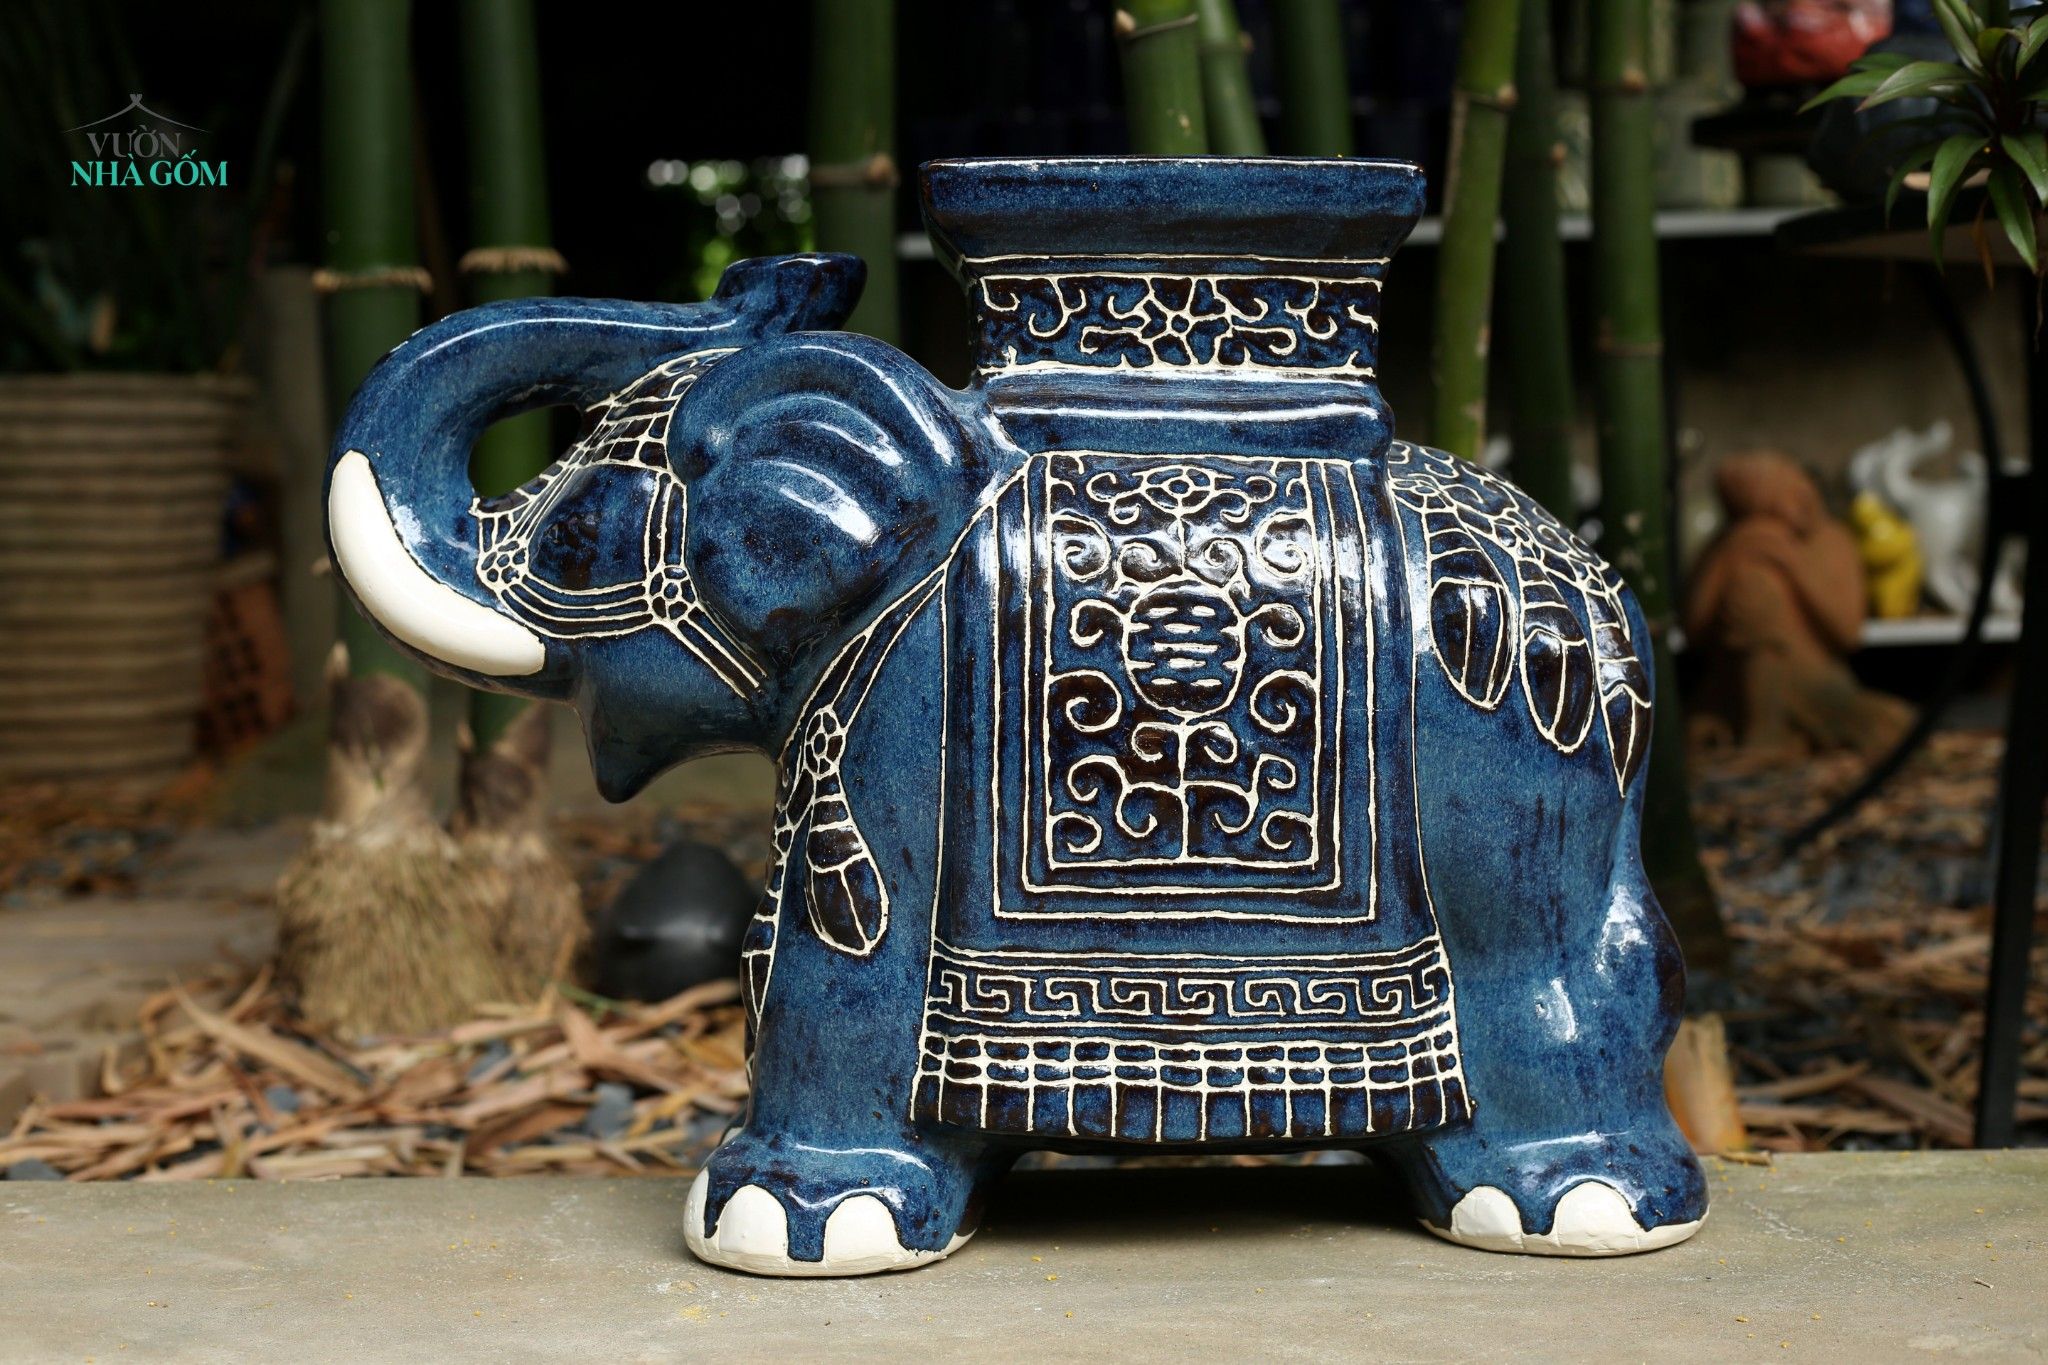  Đôn voi truyền thống, gốm Nam Bộ, gợi nhớ ký ức, xanh men chảy, C43 x R50cm 